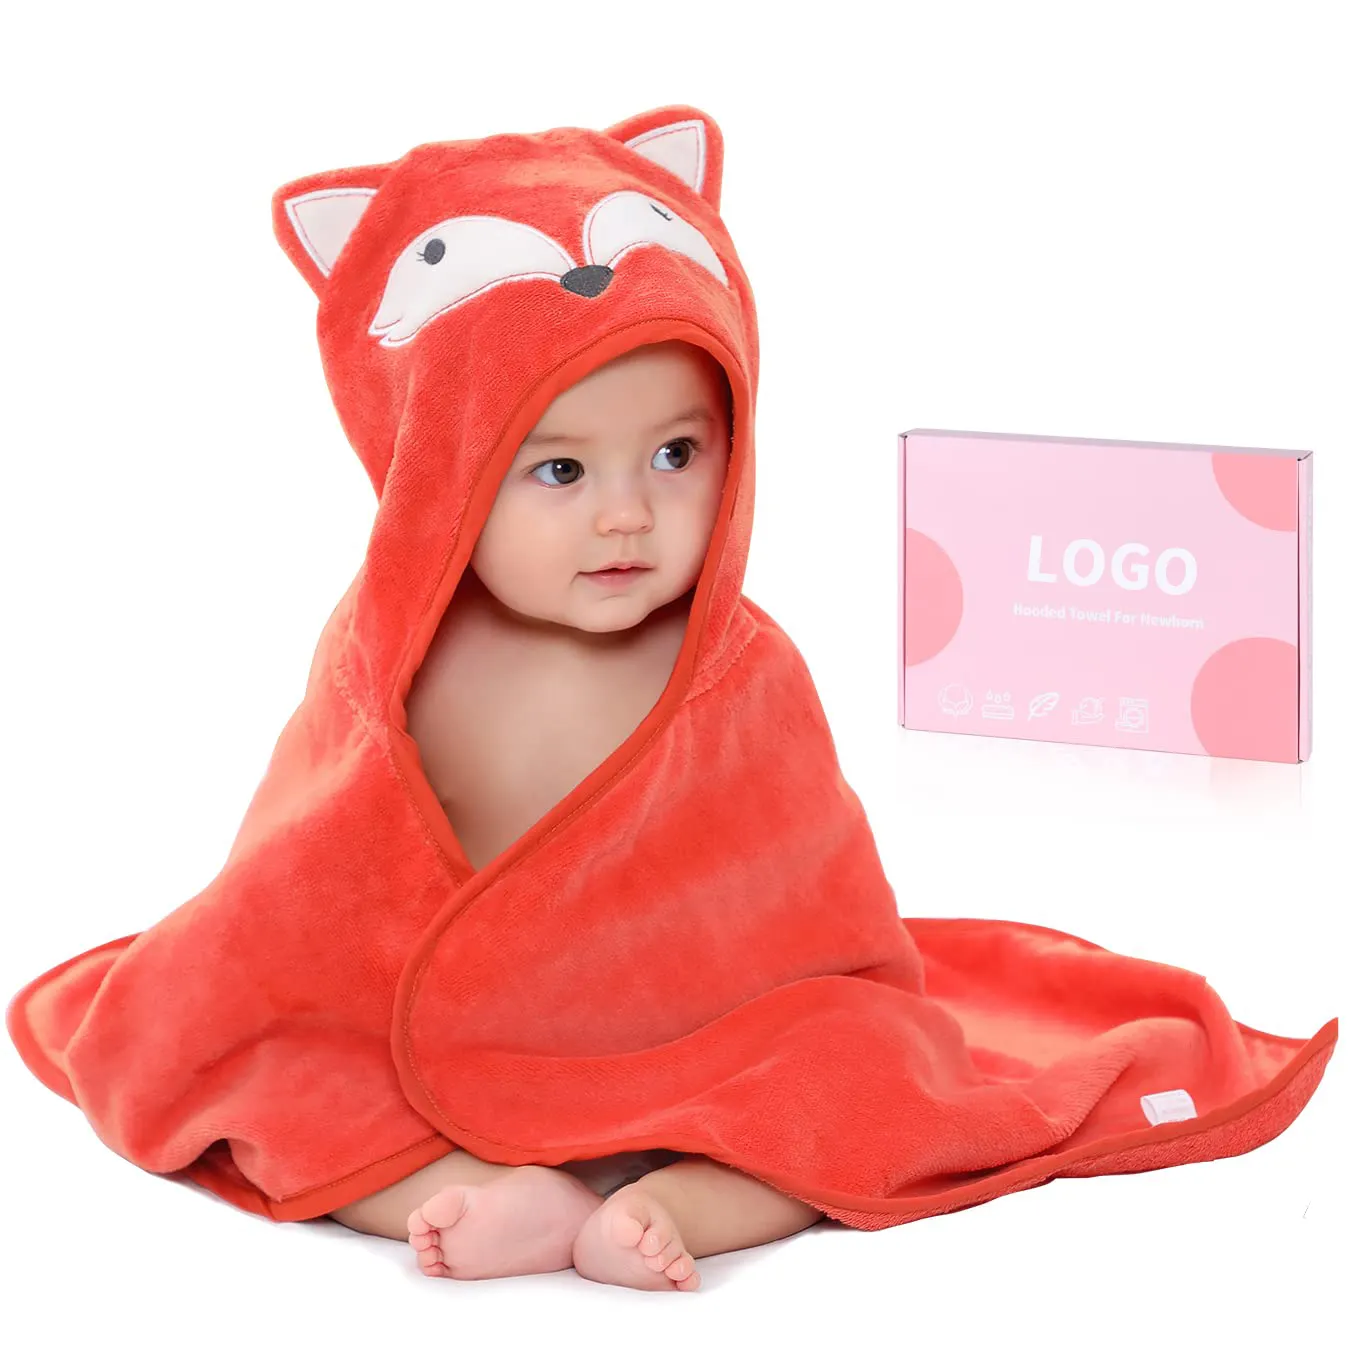 Benutzer definierte Tier Design Bio-Baumwolle Kinder Bad Decke Set Baby Kapuzen Handtuch für Neugeborene